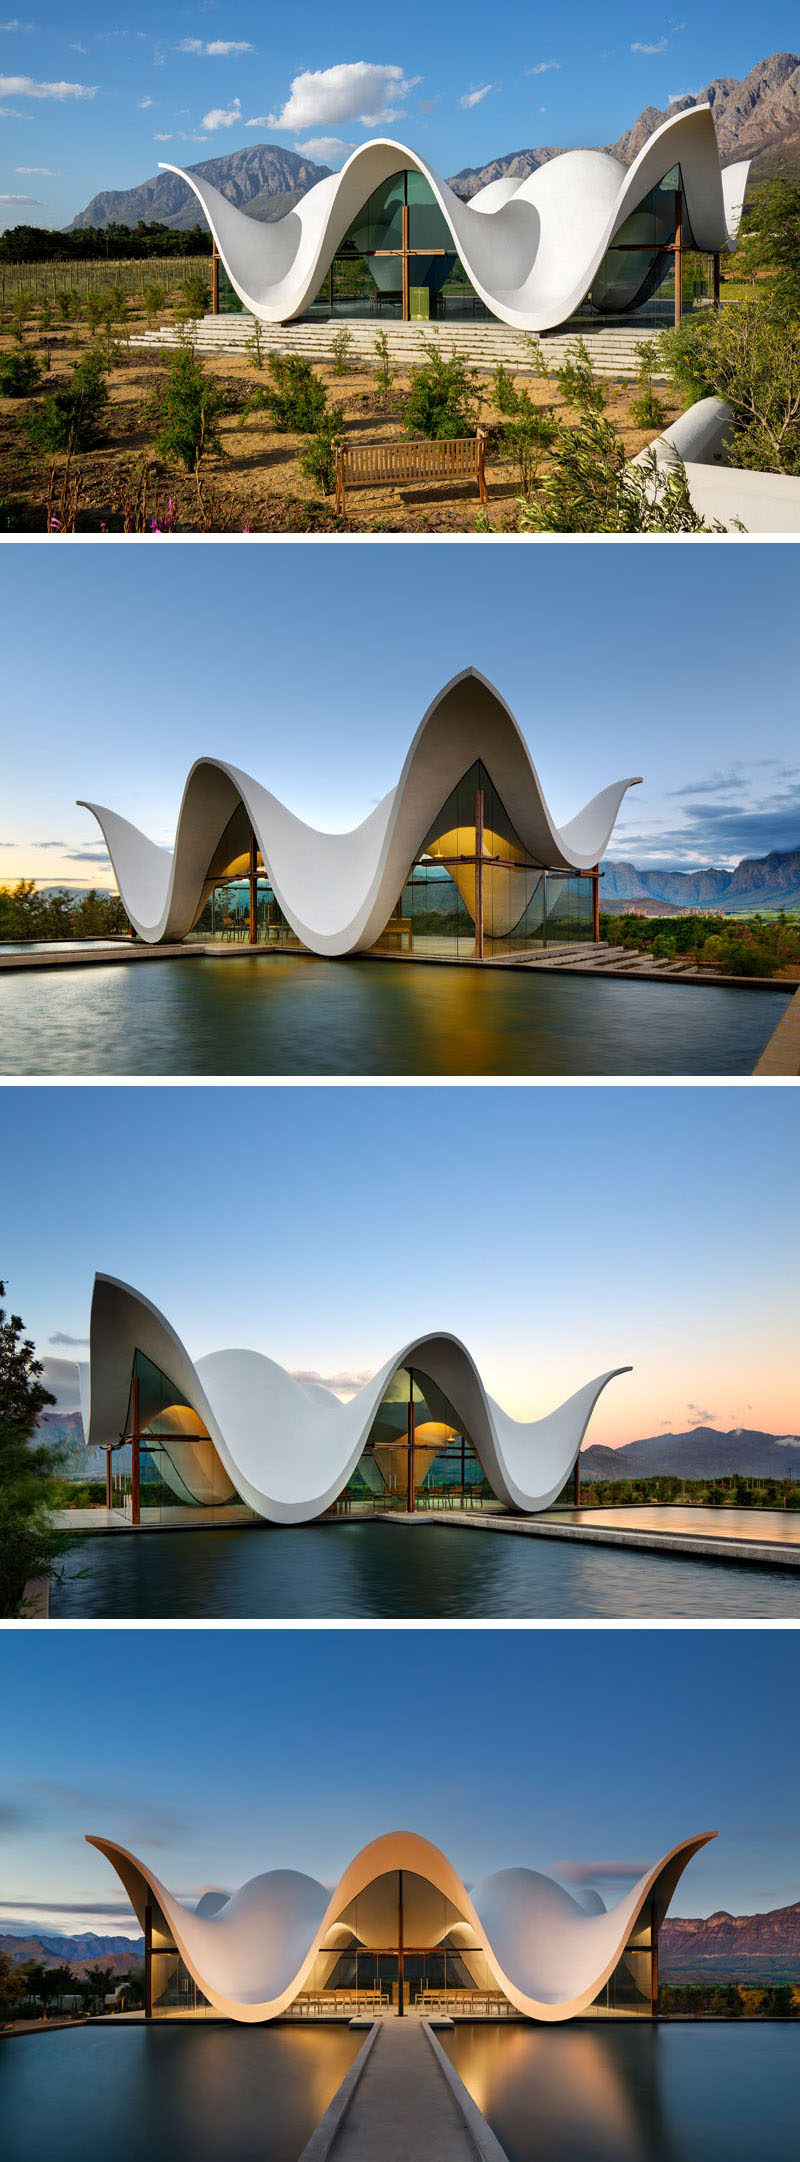  Архитектурная фирма Steyn Studio спроектировала скульптурную и современную часовню, расположенную на винограднике в Западном Кейптауне, Южная Африка, в окружении долины и гор. 